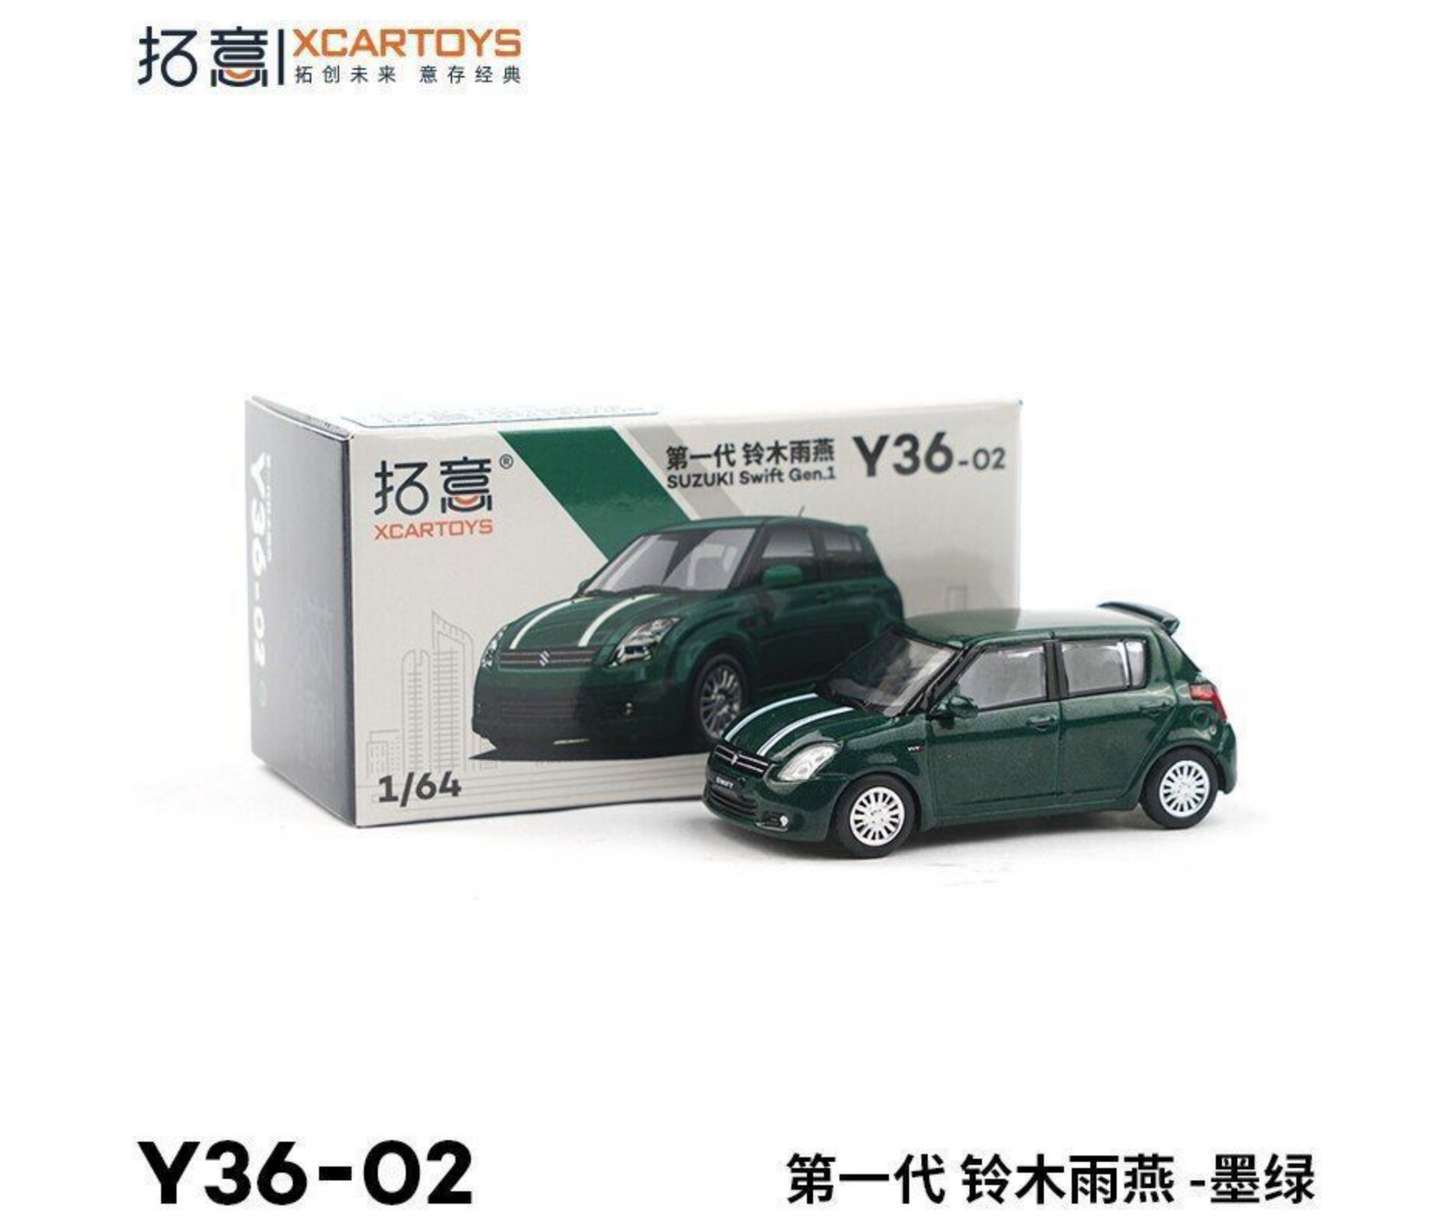 Xcartoys 1/64 Suzuki Swift Gen.1 Green with white Stripe